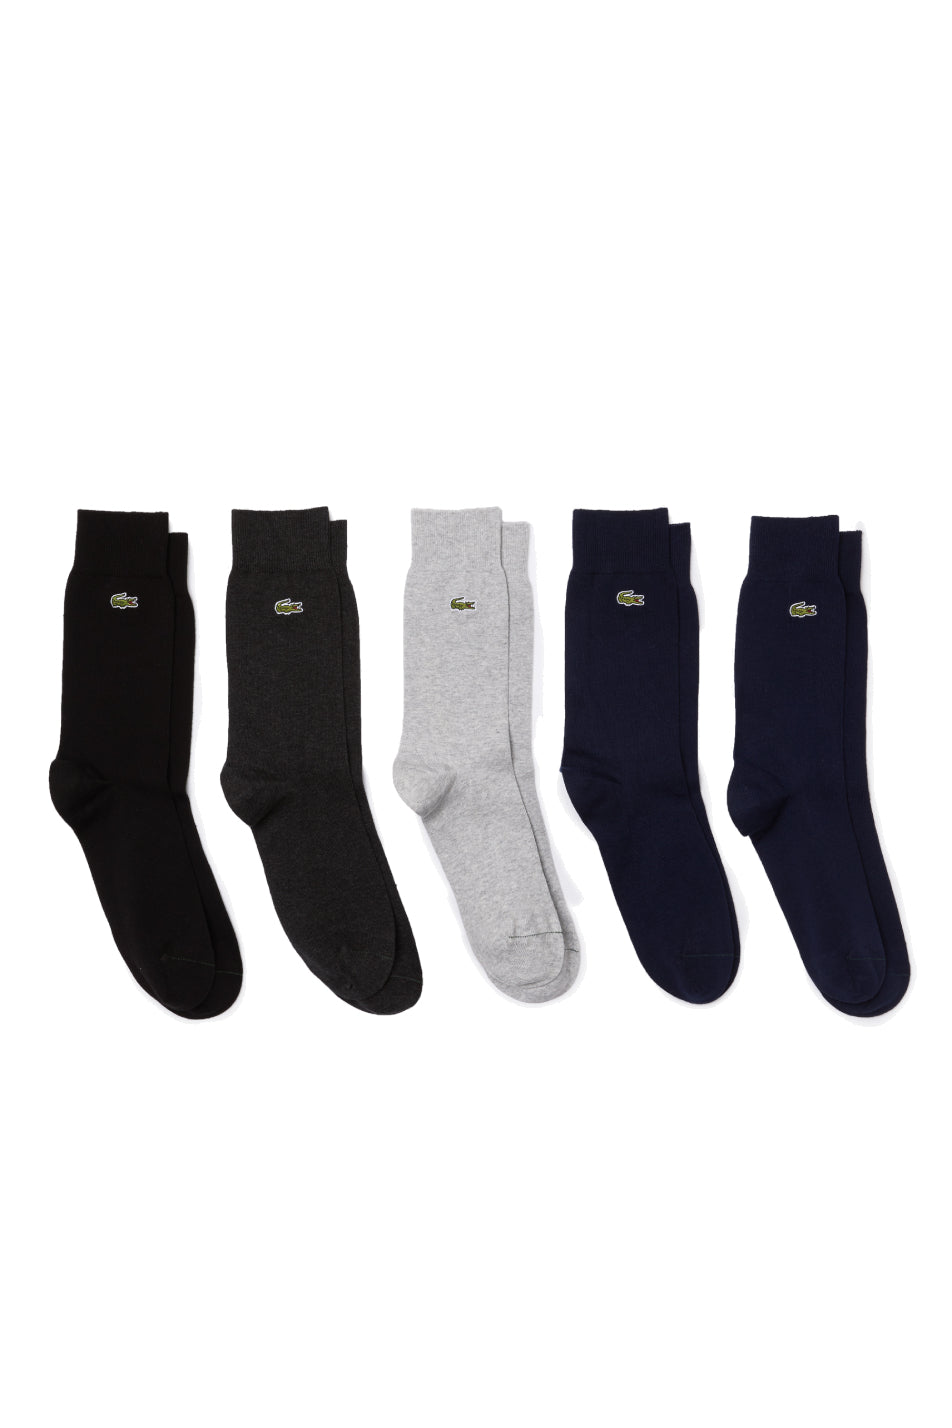 Lacoste 5 Pack Unisex High-Cut Cotton Piqué Socks